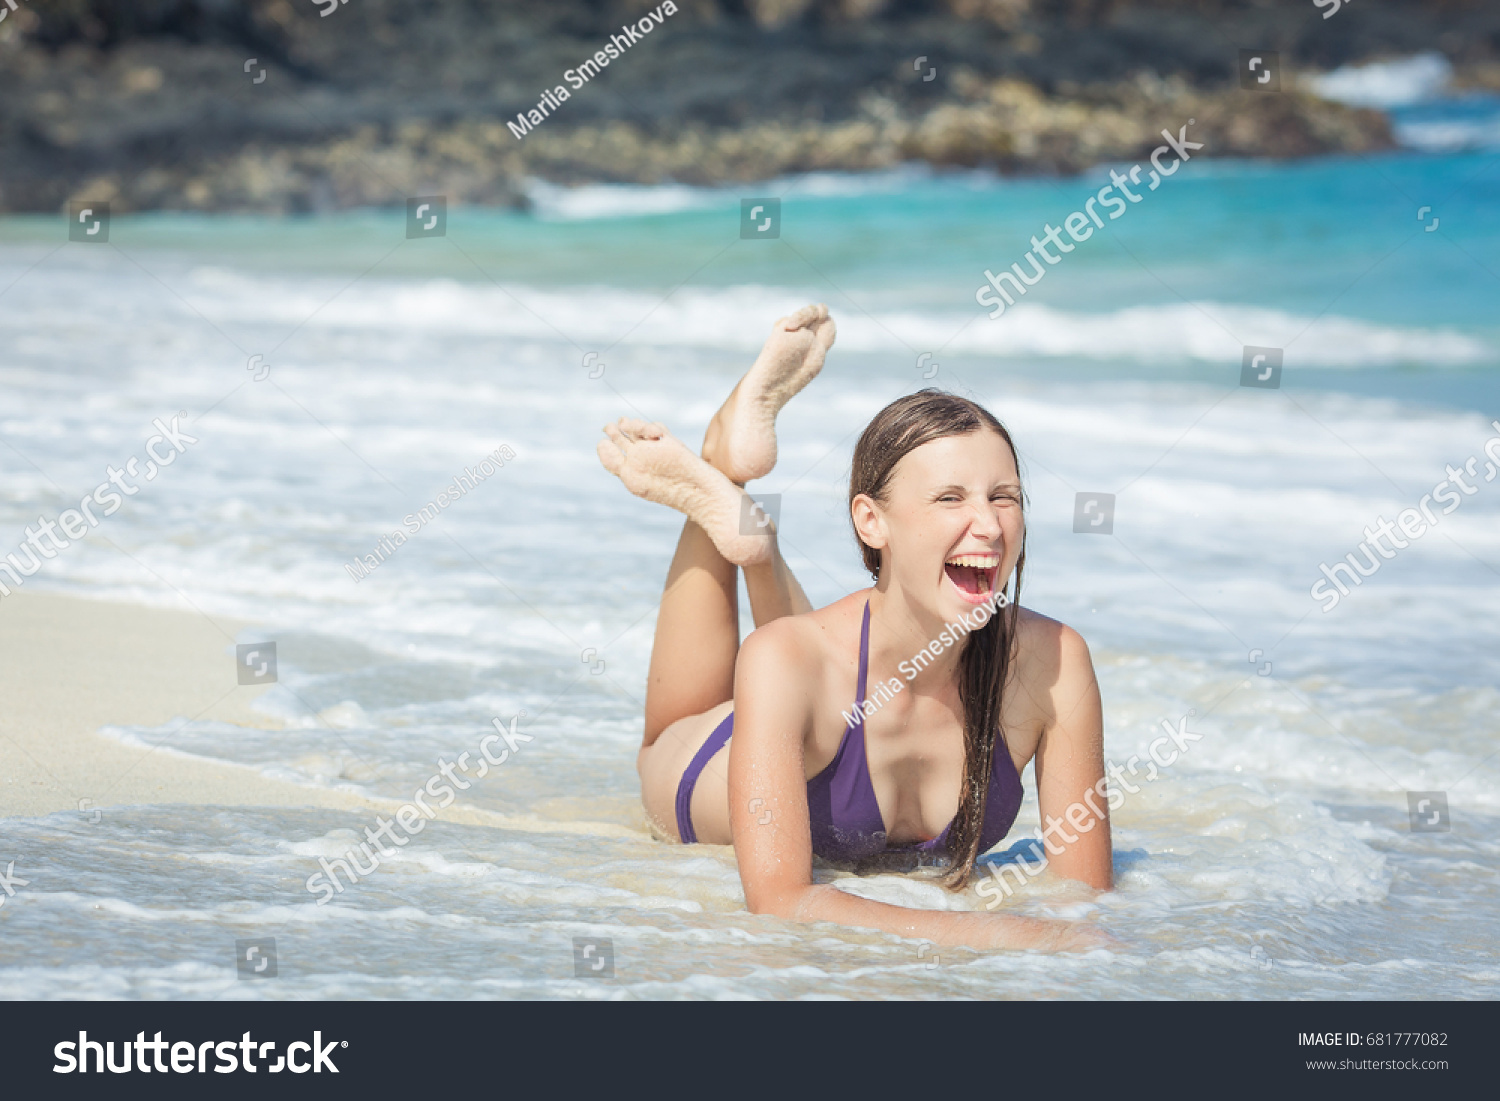 Jb Non Nude Teen Girls In Bikinis Beach